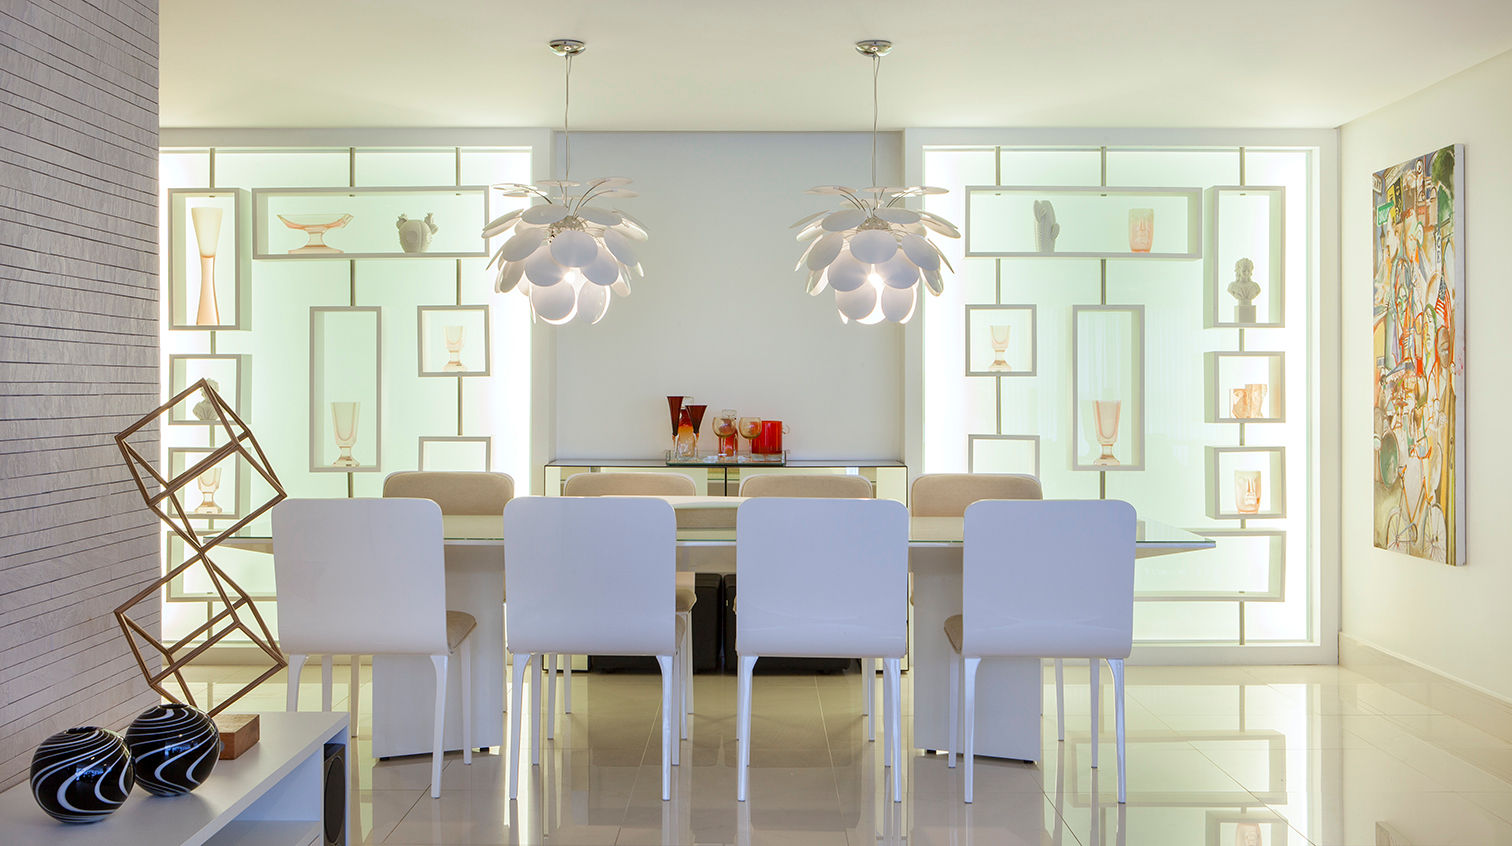 Apartamento 180m² em Boa Viagem, André Caricio Arquitetura André Caricio Arquitetura Modern dining room Tables